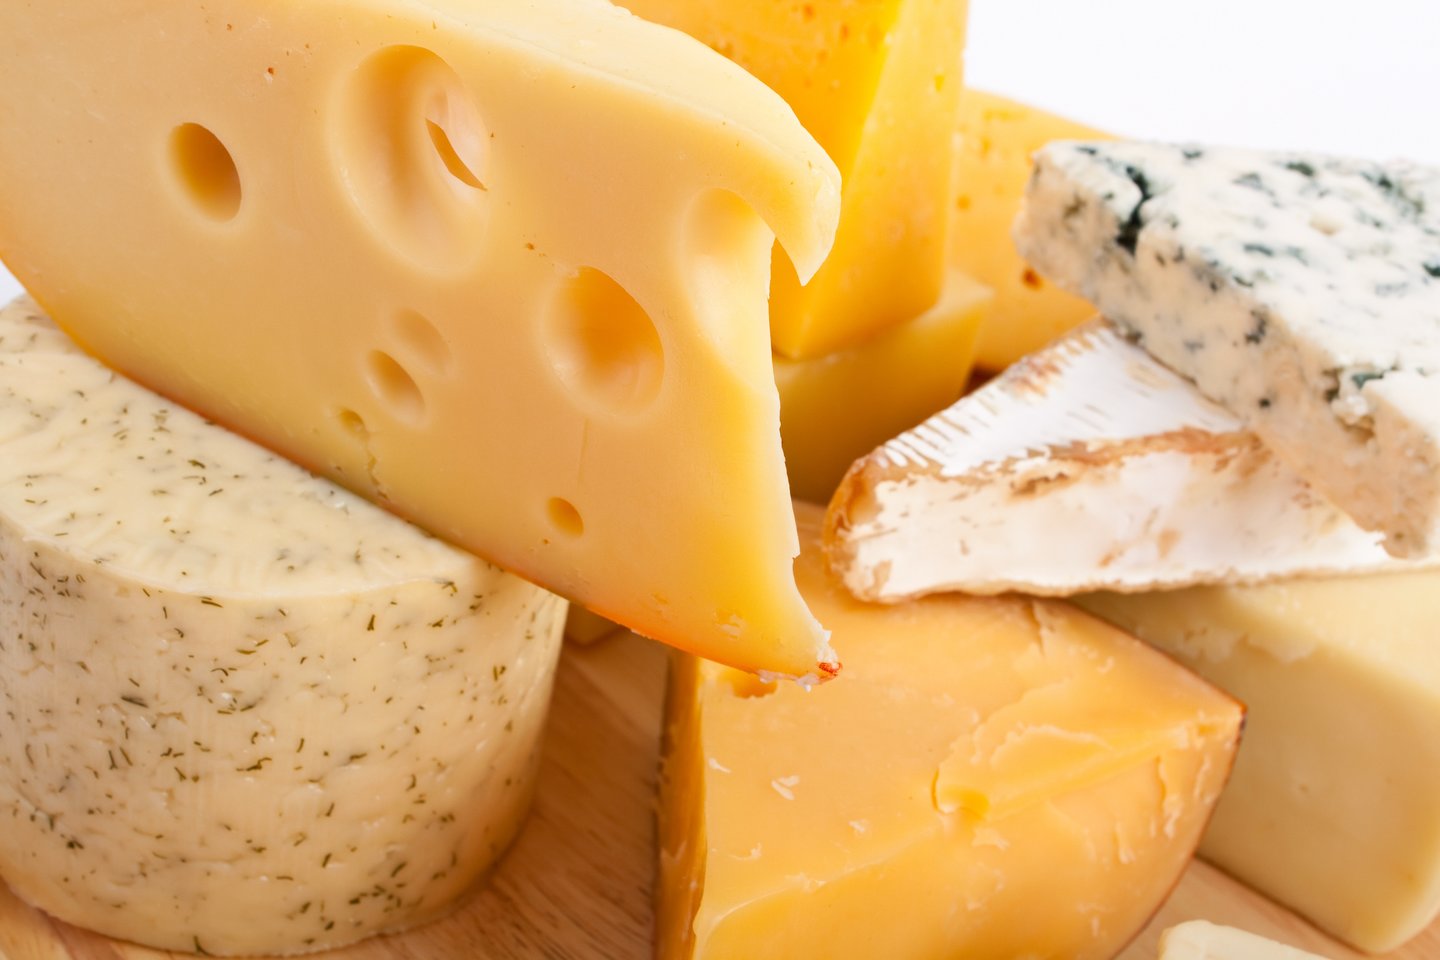  Mokslininkas sako, kad jiems pavyko išsiaiškinti, jog sūris buvo pagamintas daugiausia iš avies ir ožkos pieno, tačiau tikrąjį skonį, savaime suprantama, galima tik įsivaizduoti (asociatyvinė nuotr.)<br> 123rf nuotr.